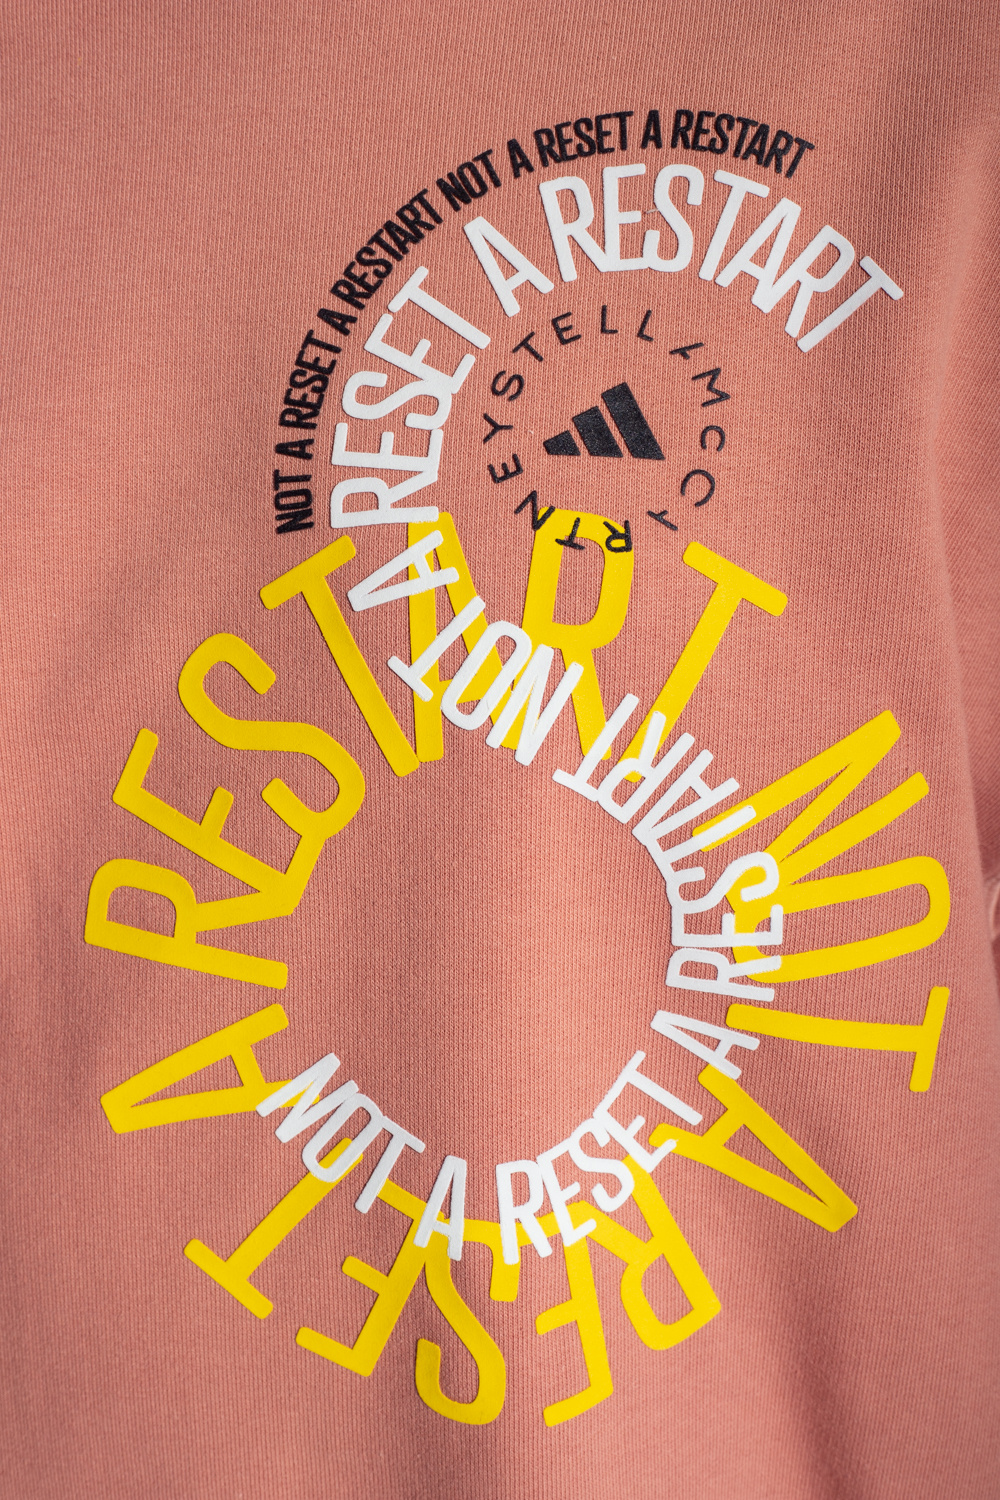 ADIDAS by Stella McCartney Printed sweatshirt